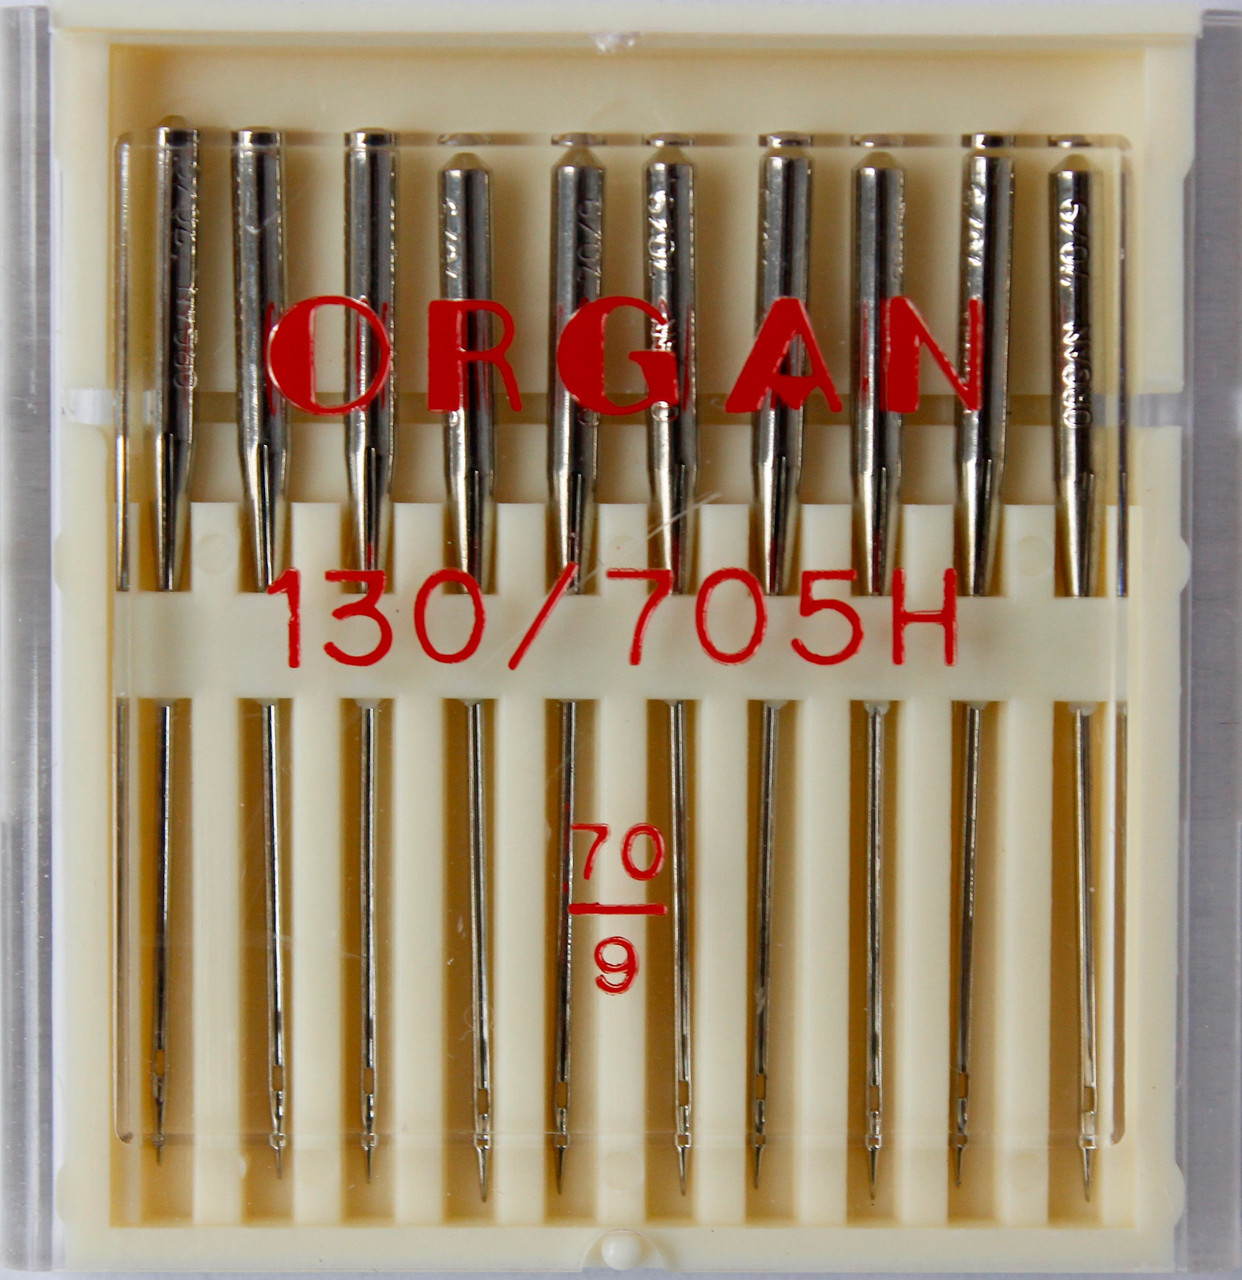 Голки універсальні для побутових швейних машин 130/705Н No 70 Organ Японія, 10 шт. в пакованні